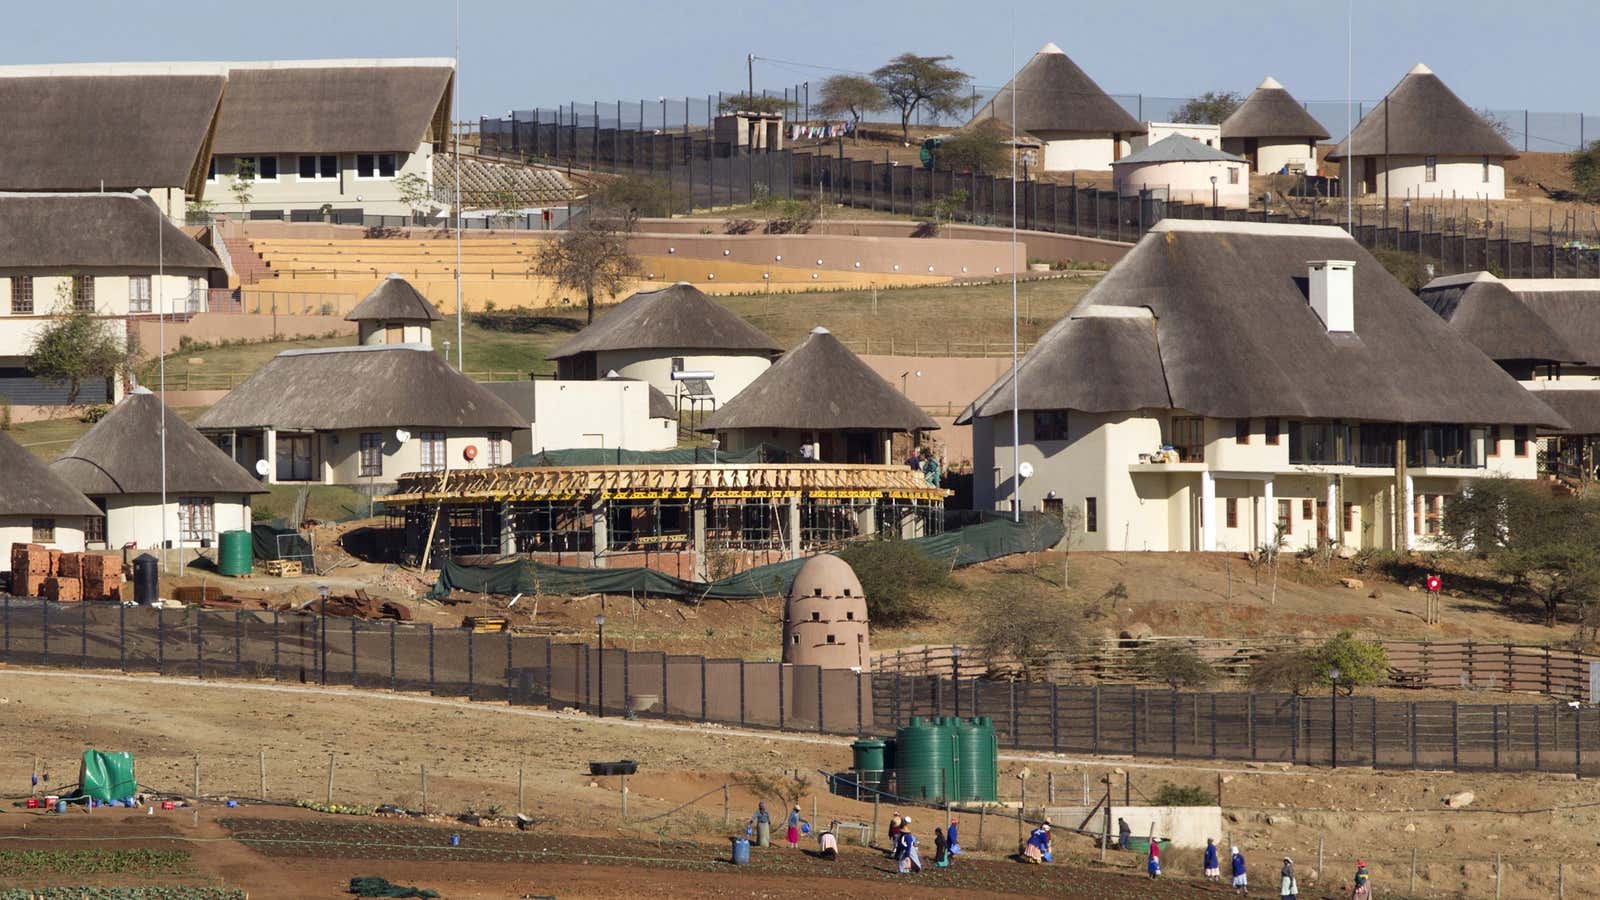 Zuma’s homestead.